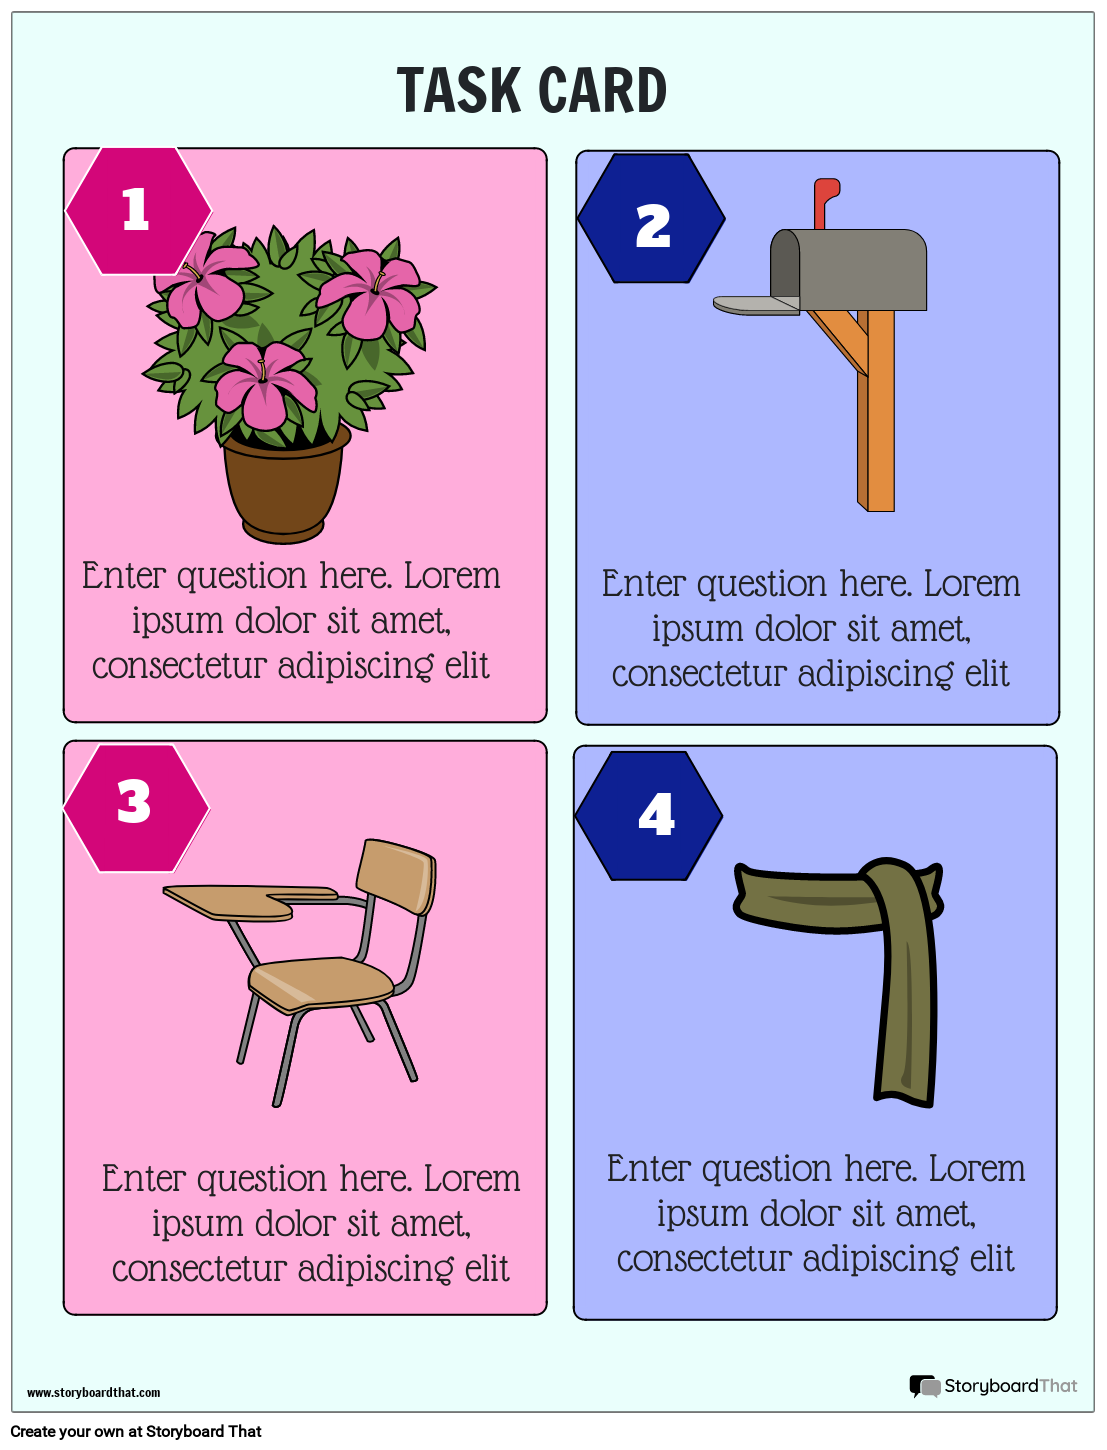 Simple image task card worksheet